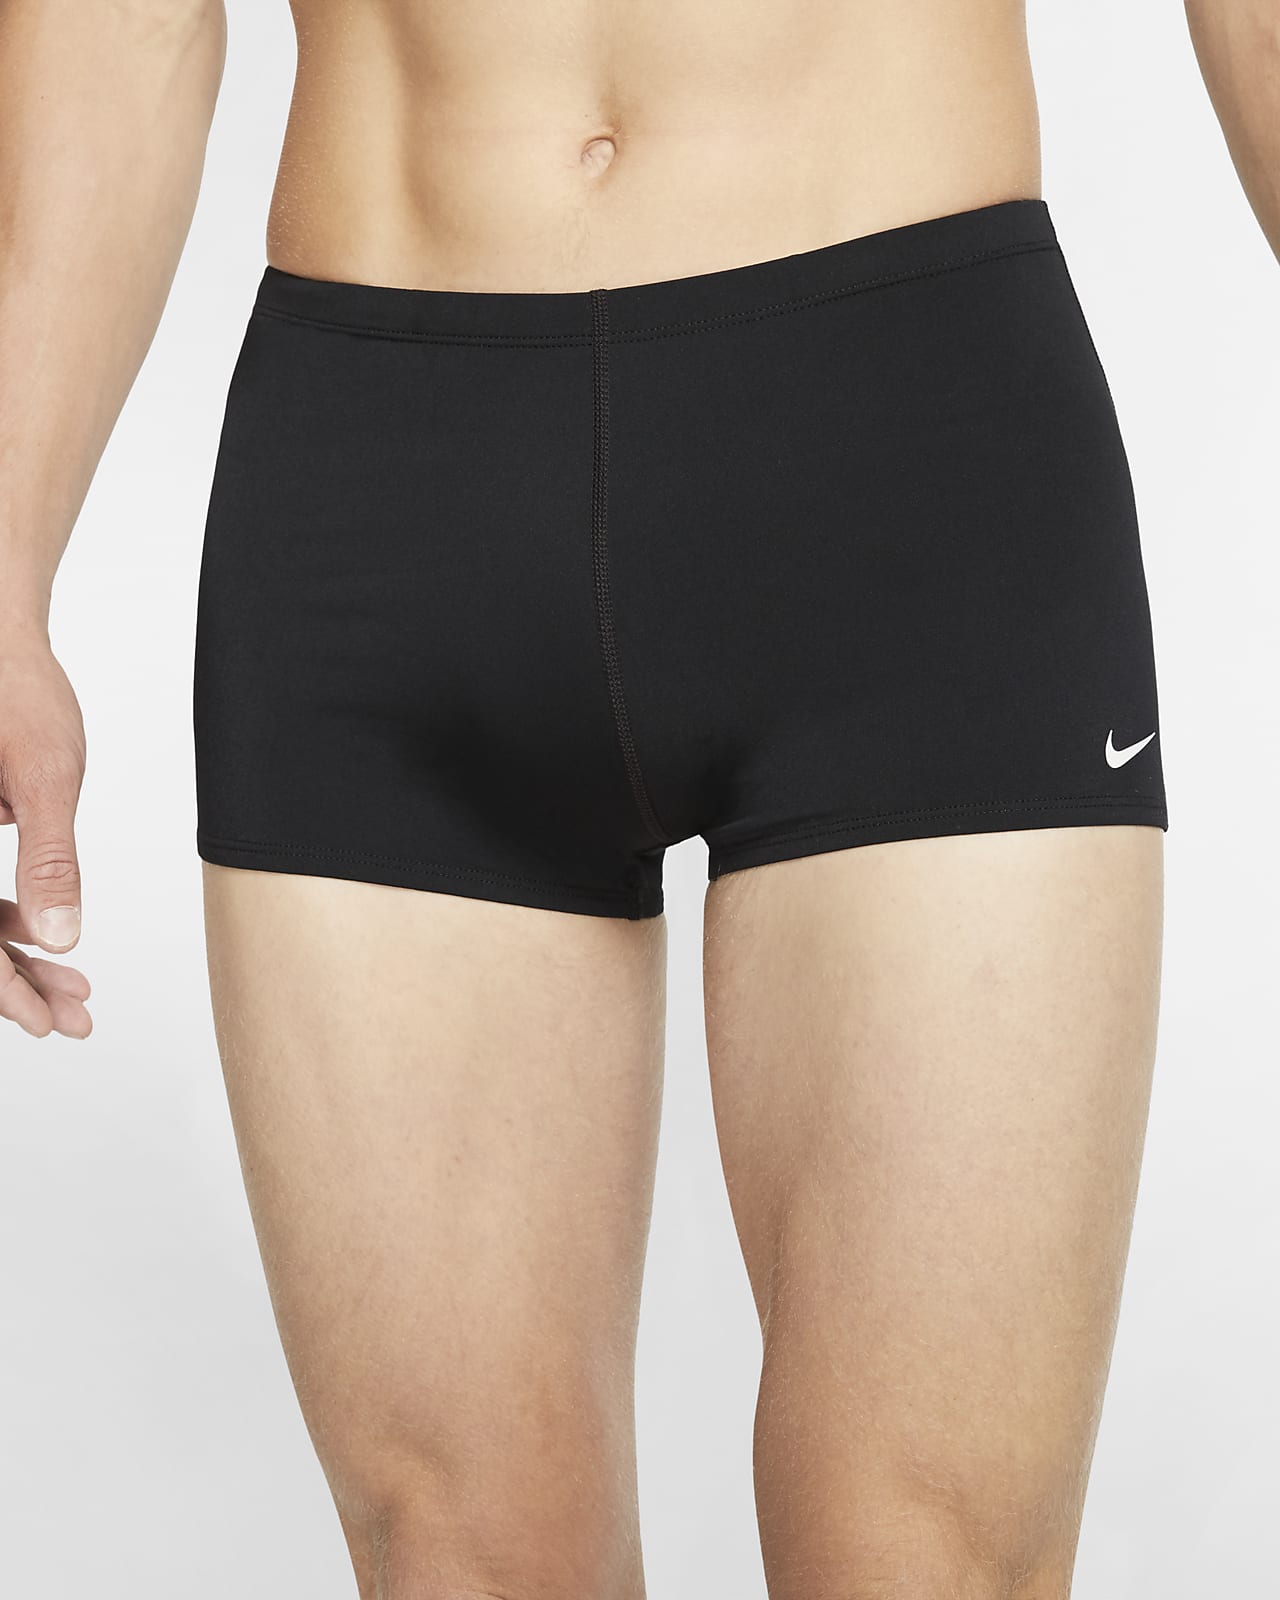 spiller filthy Overdreven Nike Swim Men's Square Leg Jammer Swimsuit. Nike.com